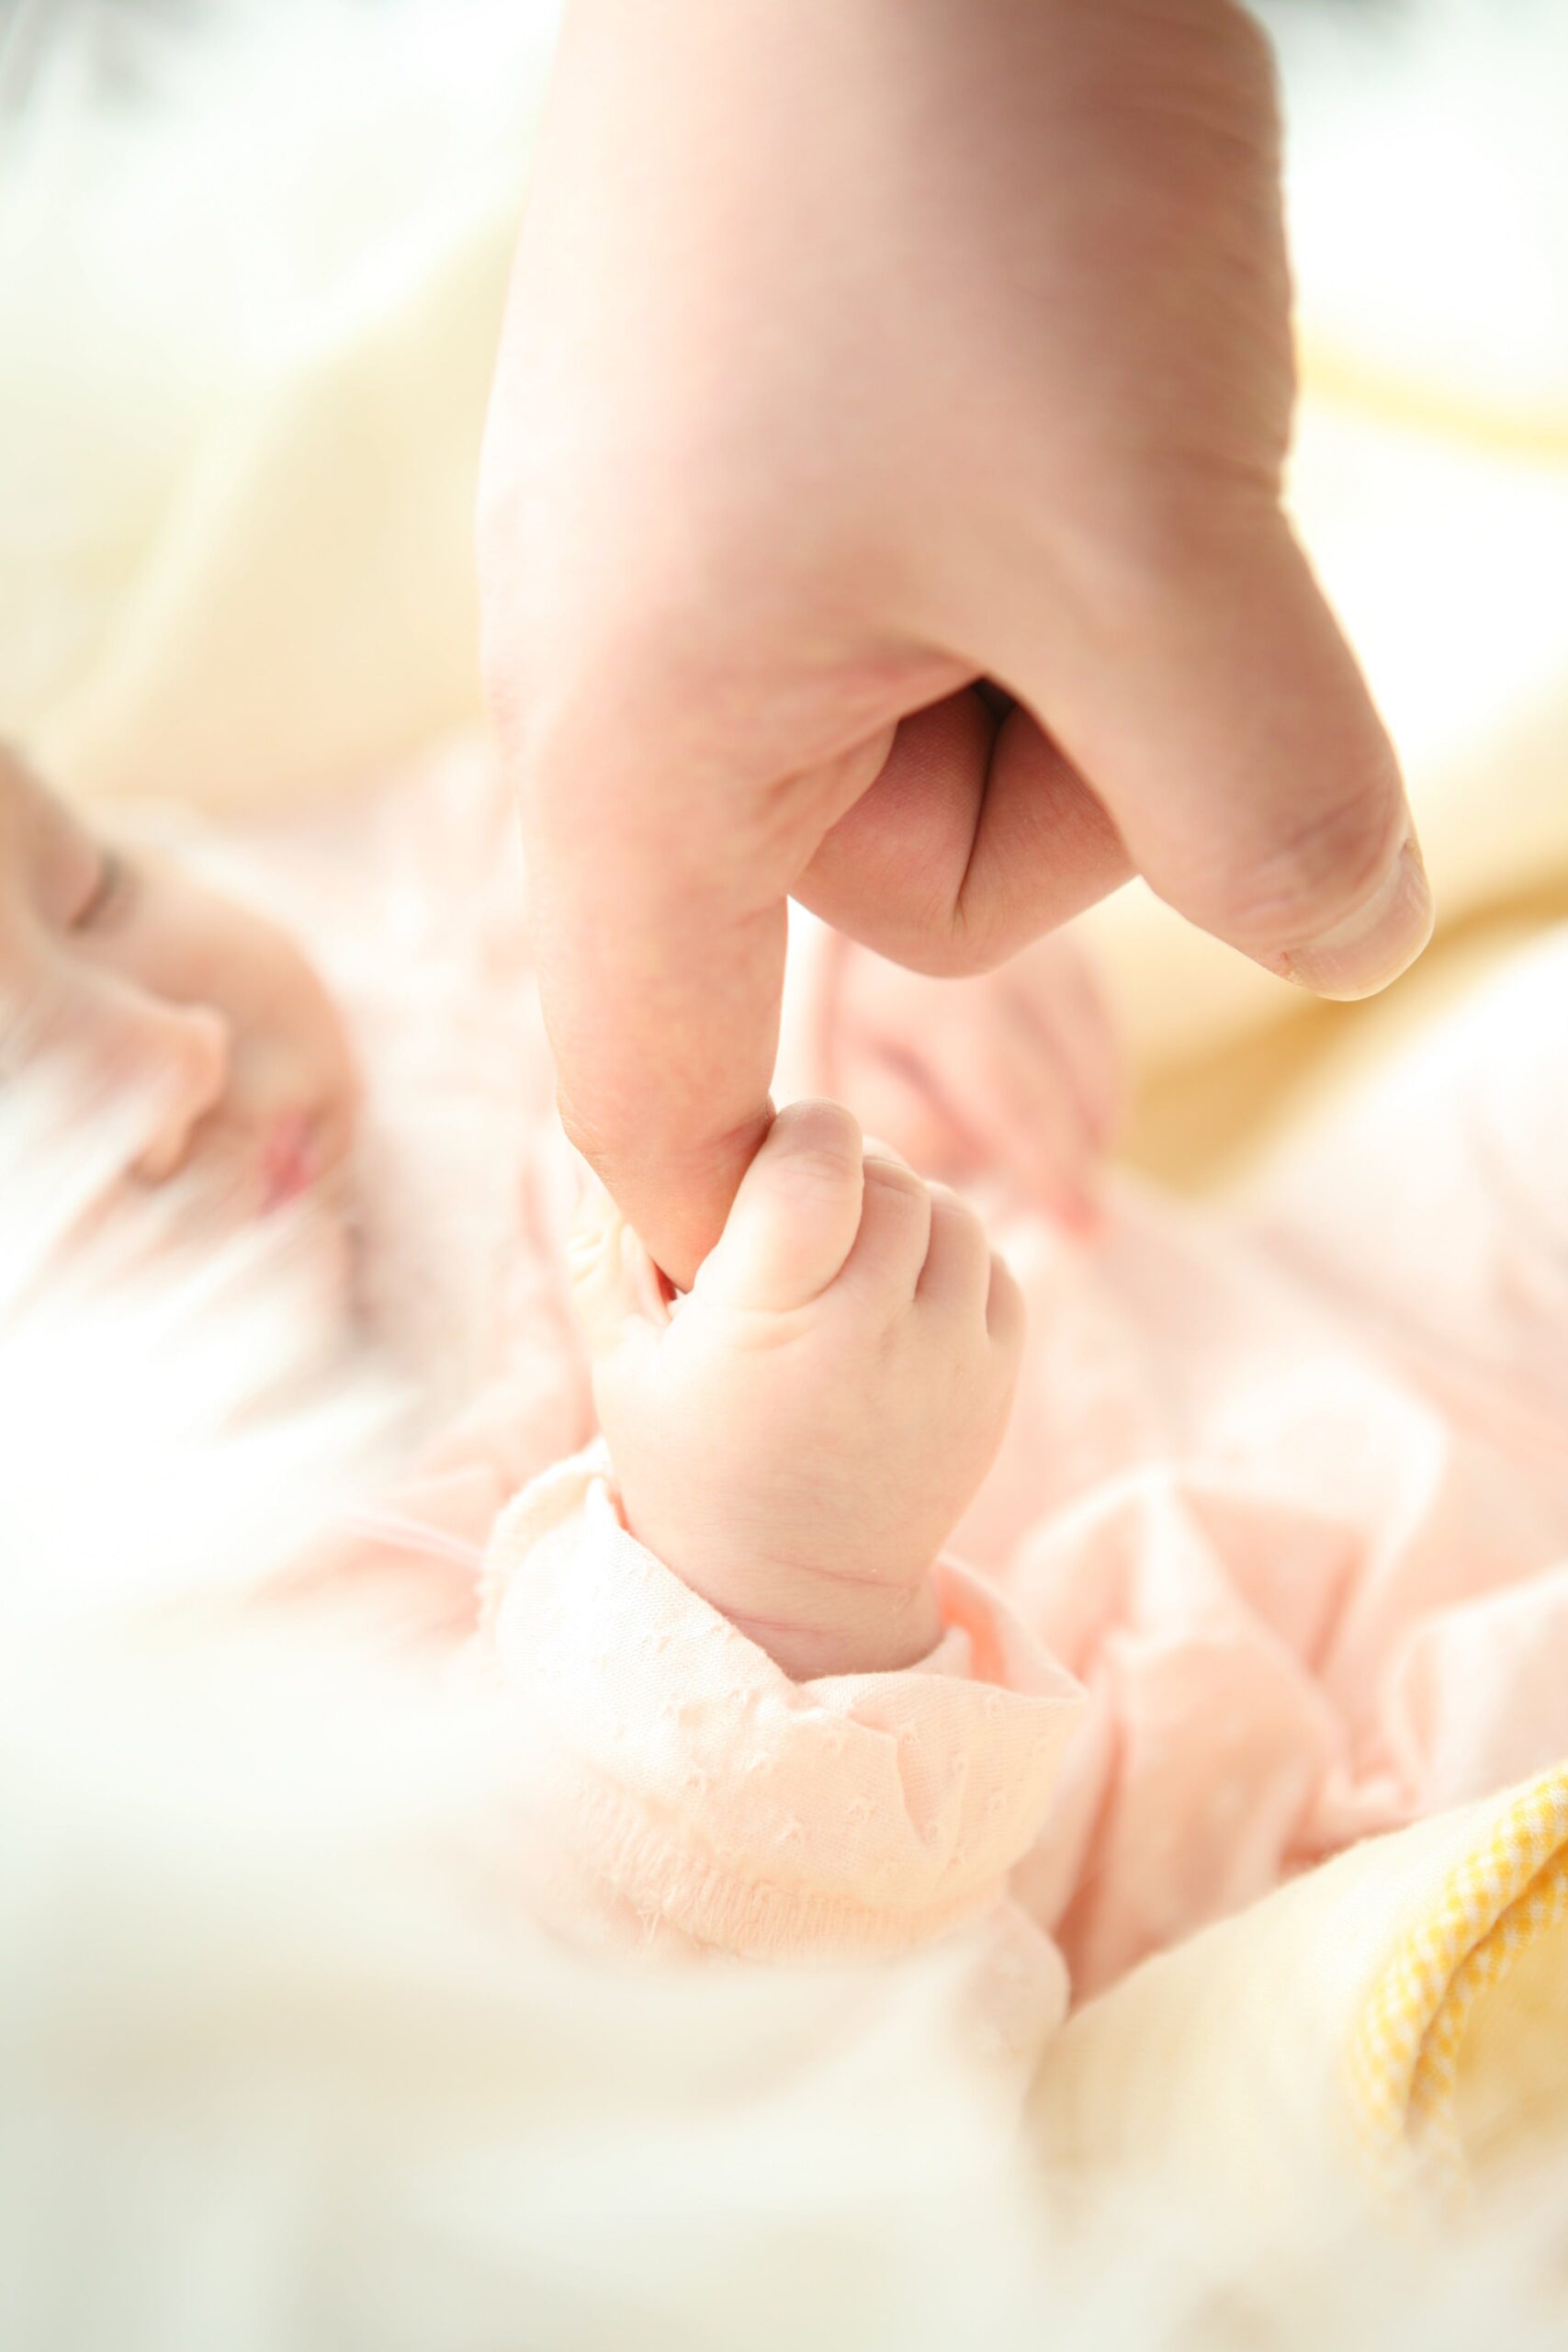 14% van de baby’s heeft geen goede start bij de geboorte